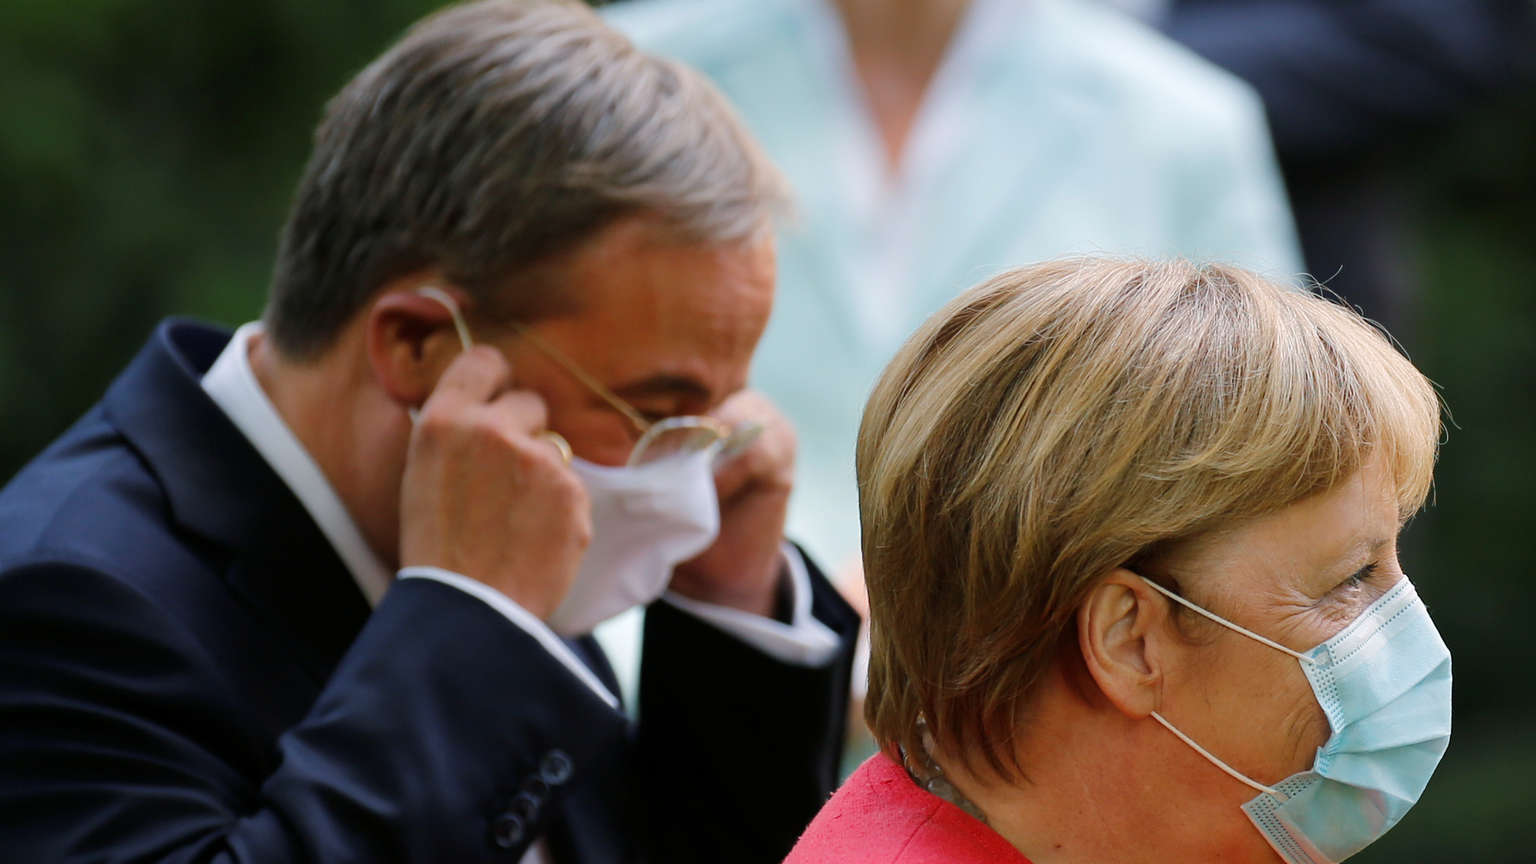 Reglas corona más estrictas: Merkel hace cumplir la ley de frenado de emergencia y el "bloqueo breve"